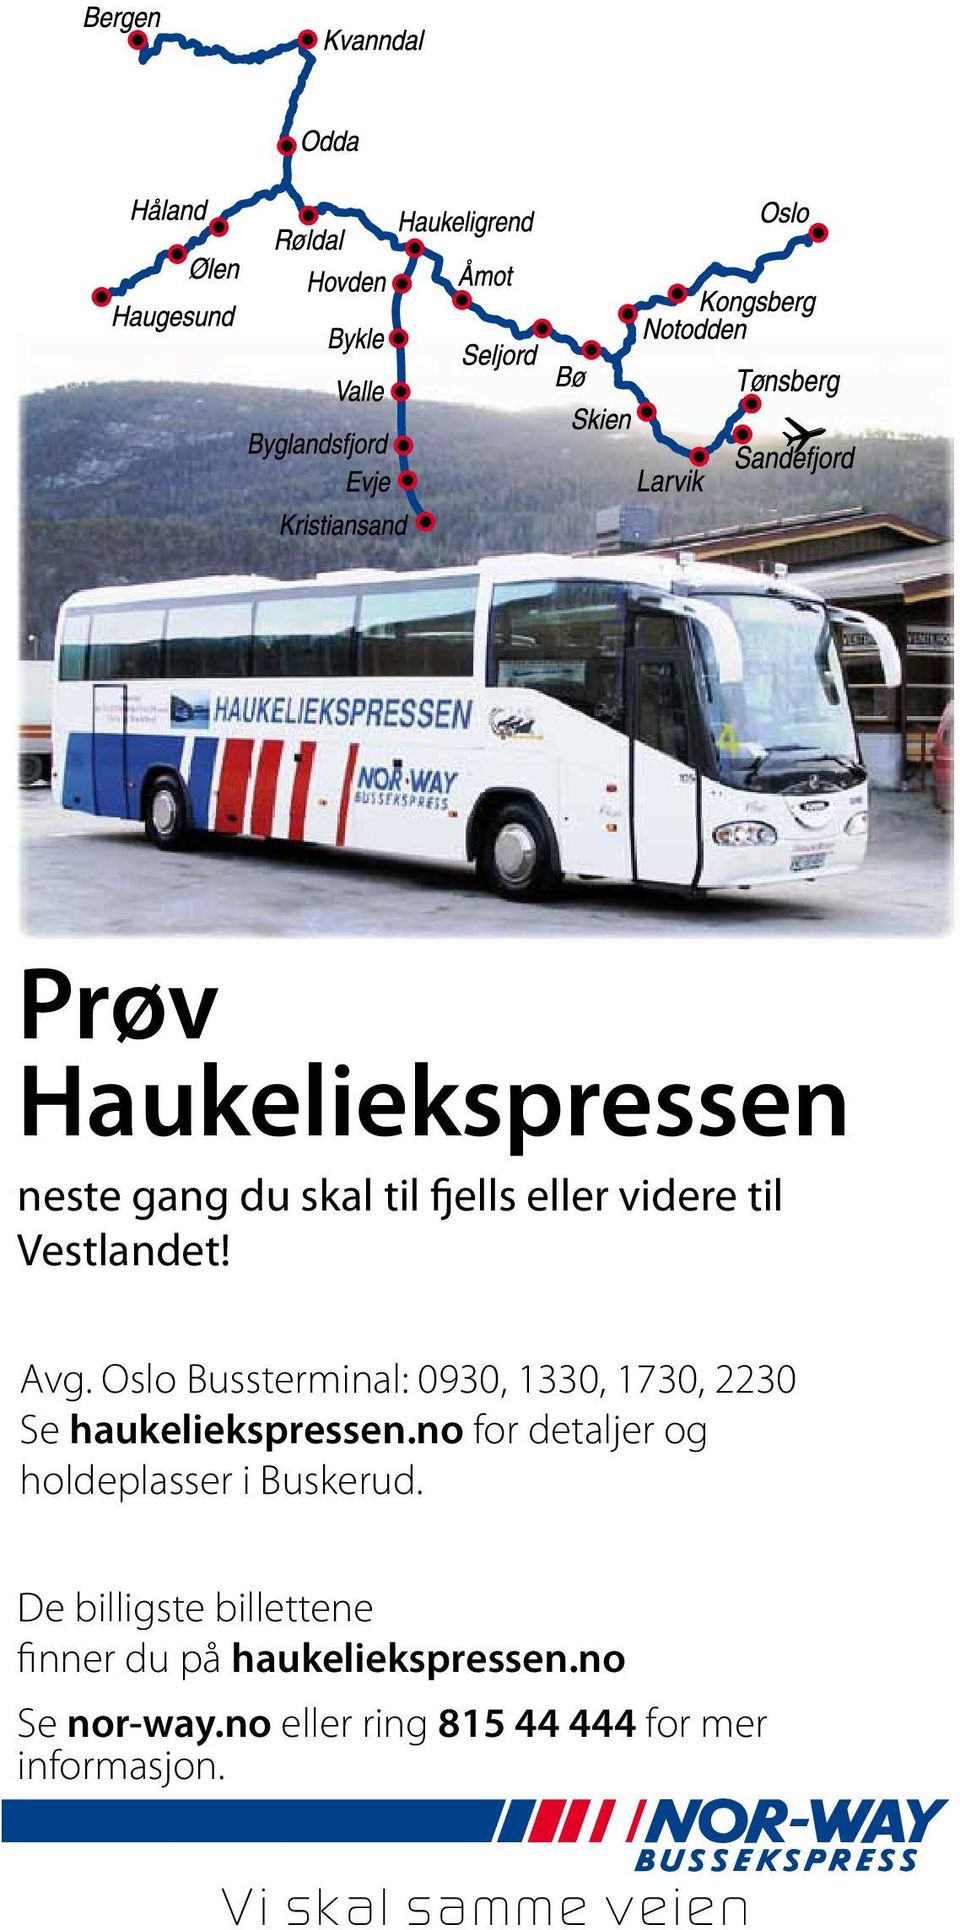 Oslo Øst- Bussterminal: og Vestlandet 0930, 1330, 1730, 2230 Avg. Se haukeliekspressen.